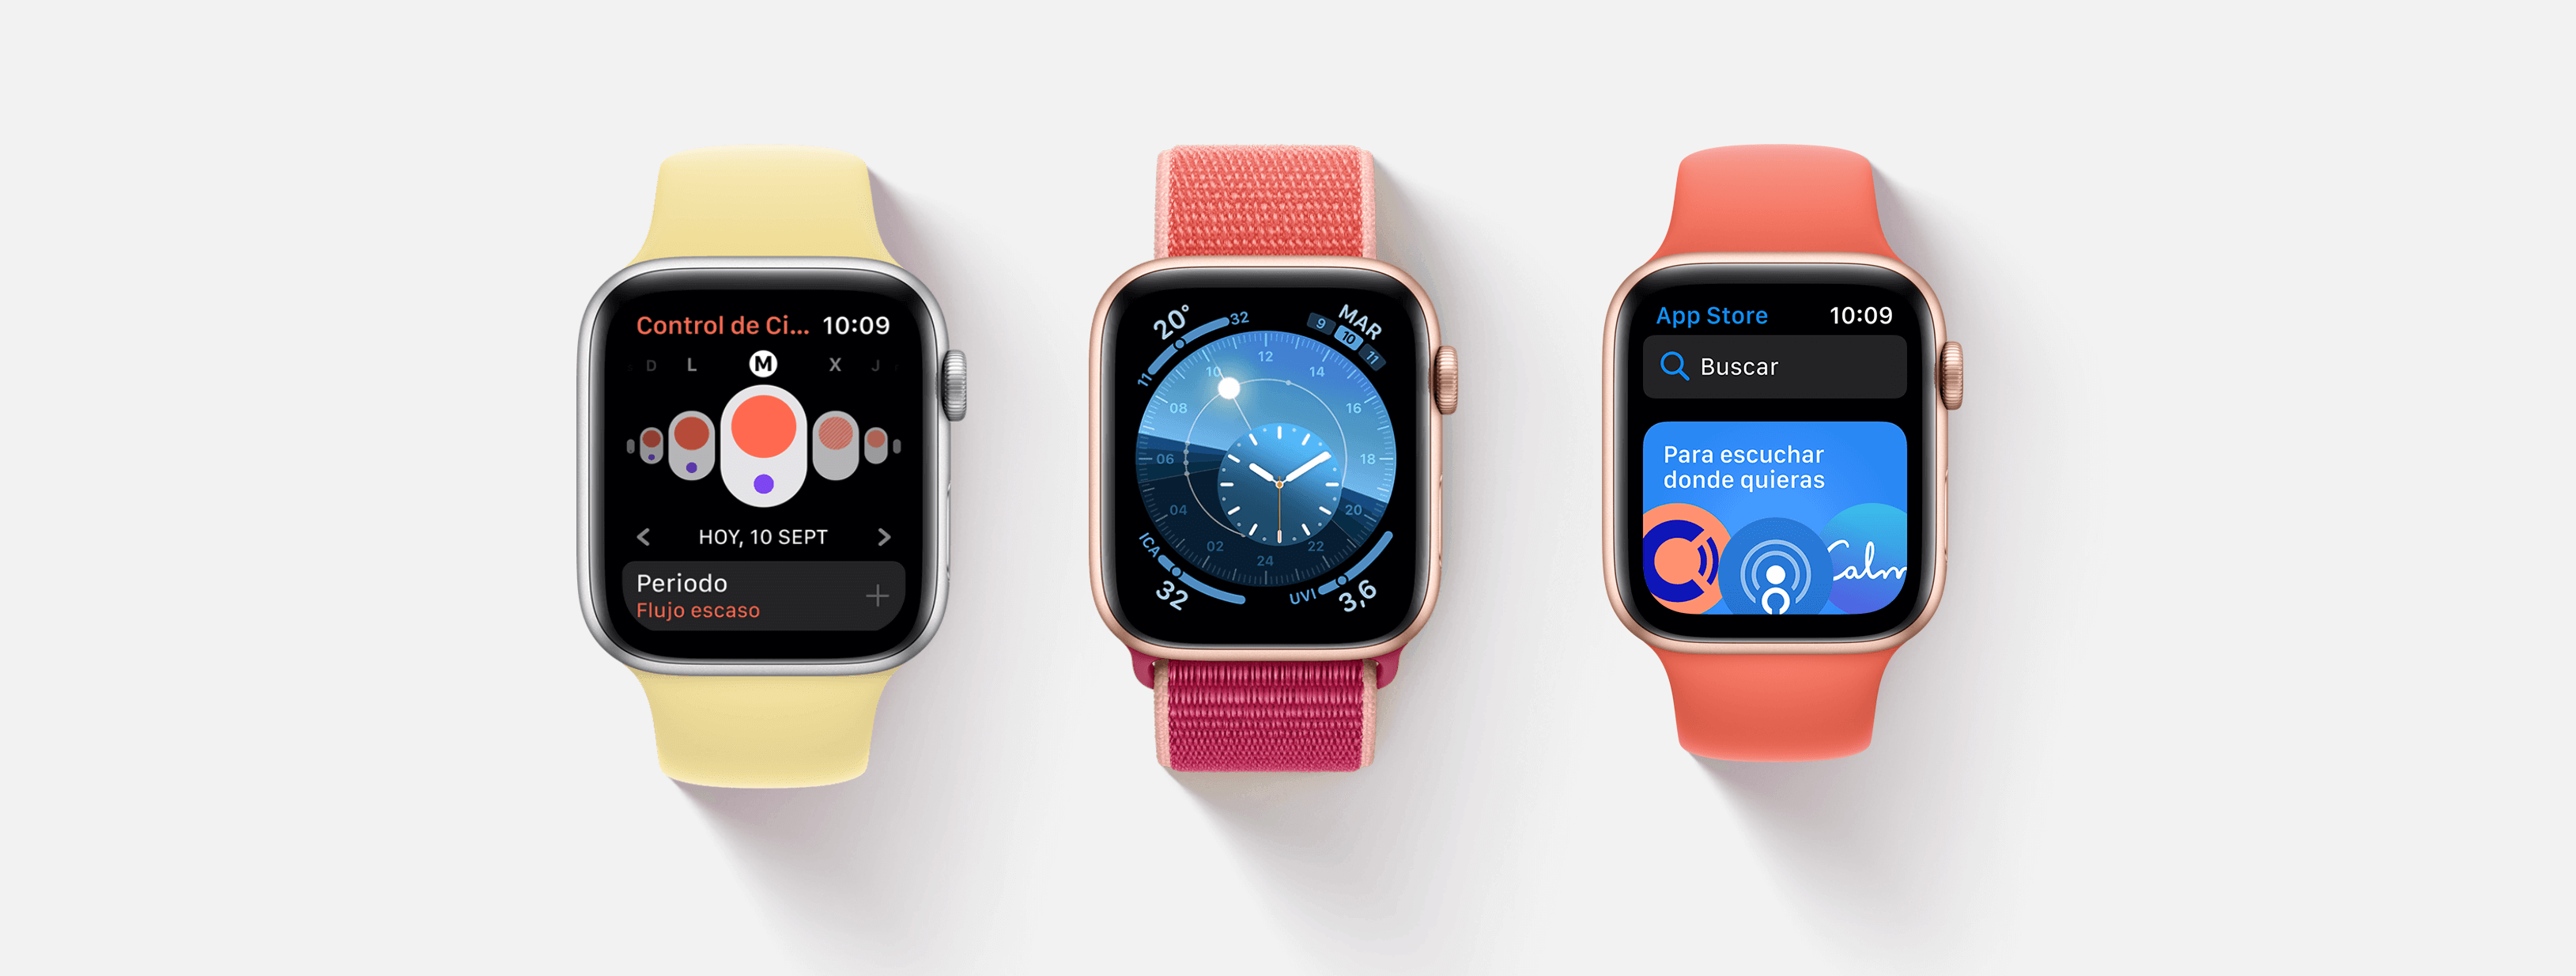 Apple Watch Series 5 y sus 5 mejores cualidades